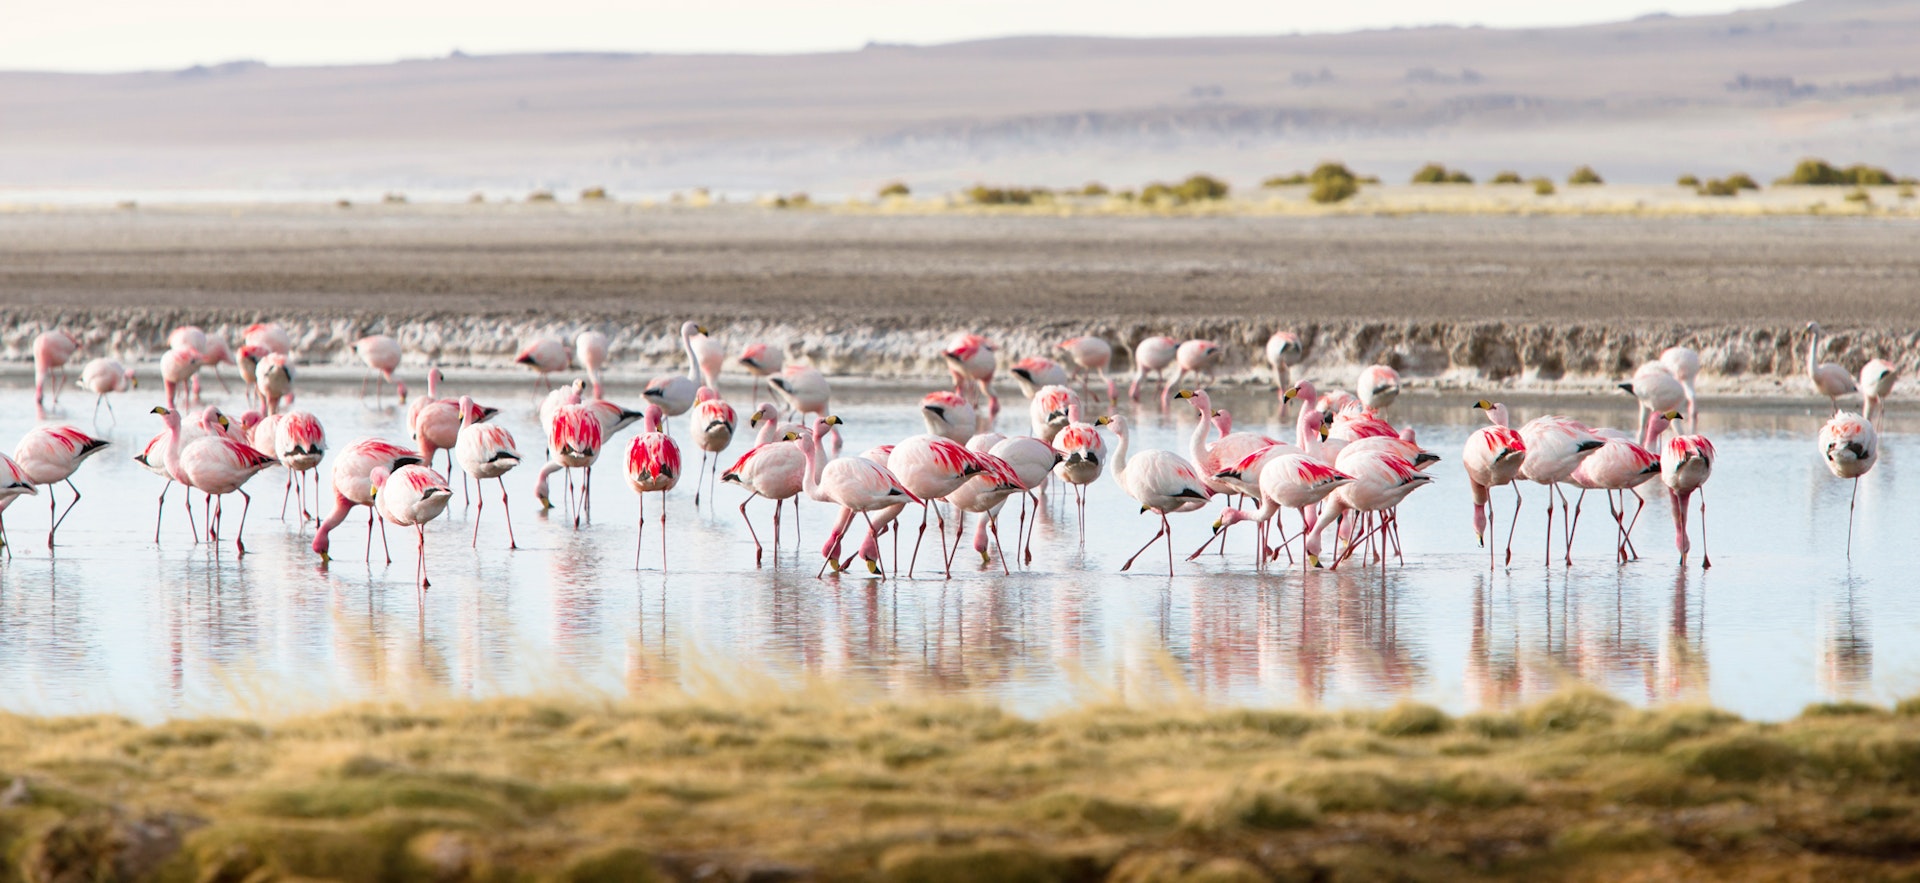 A flock of James’ flamingos feeding in Salar de Tara.